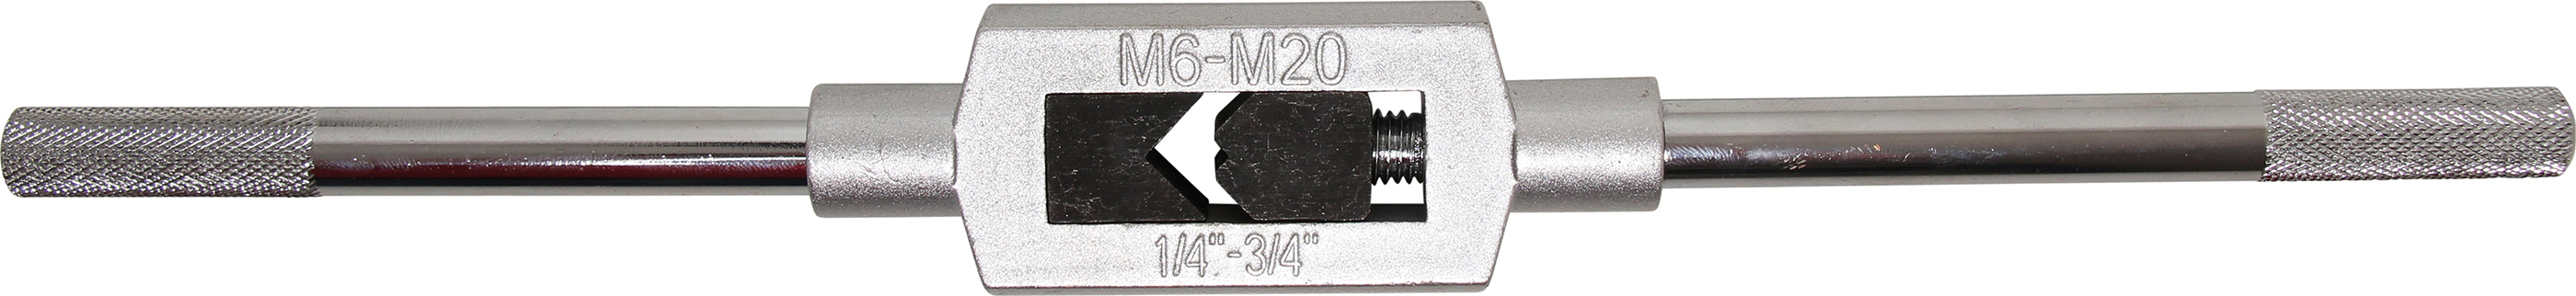 BGS 1900-2 Port tarod pentru M6 - M20